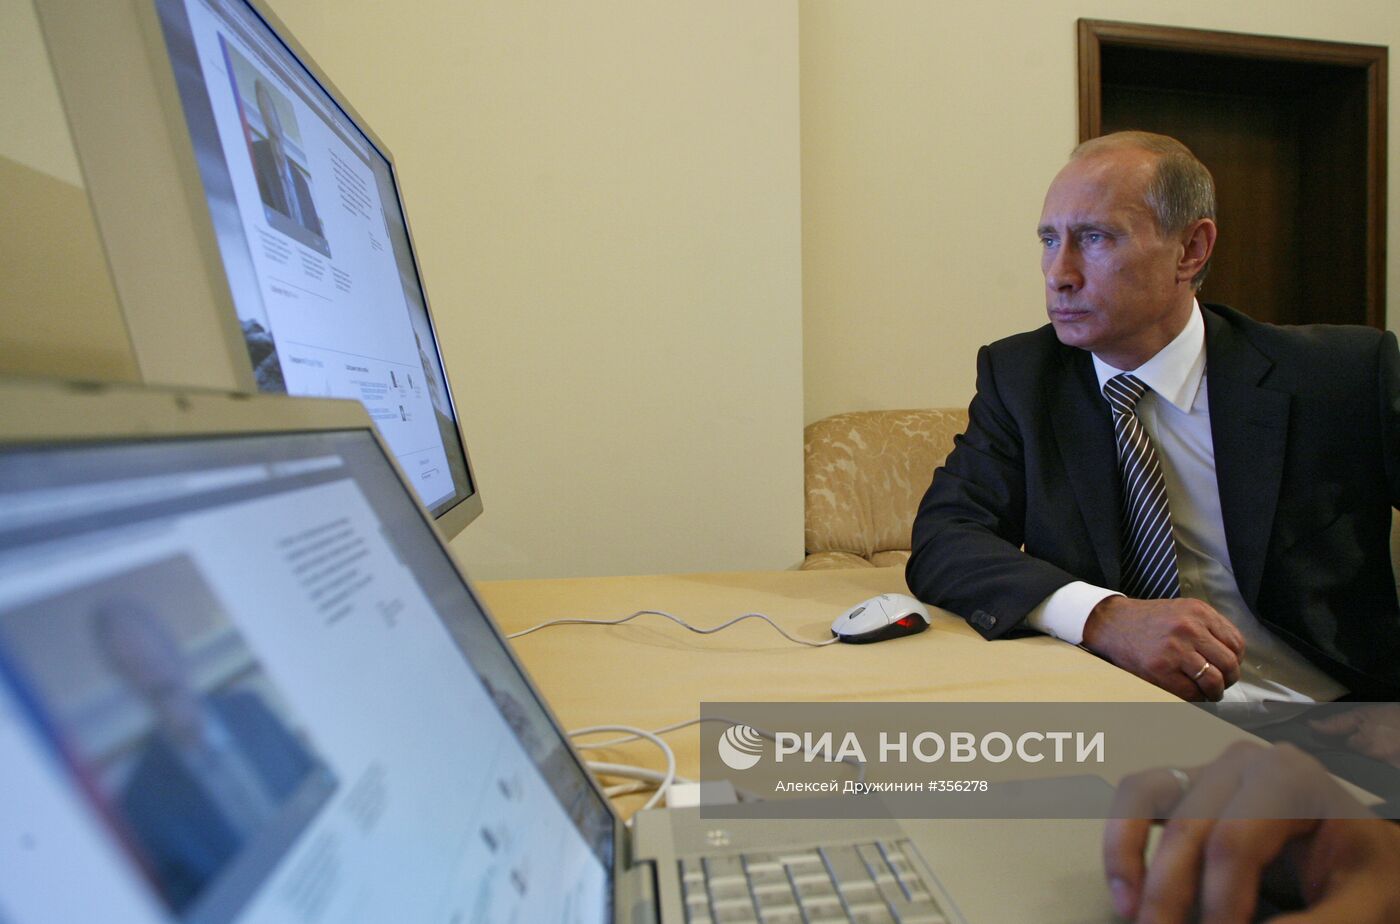 Новый официальный сайт председателя правительства РФ